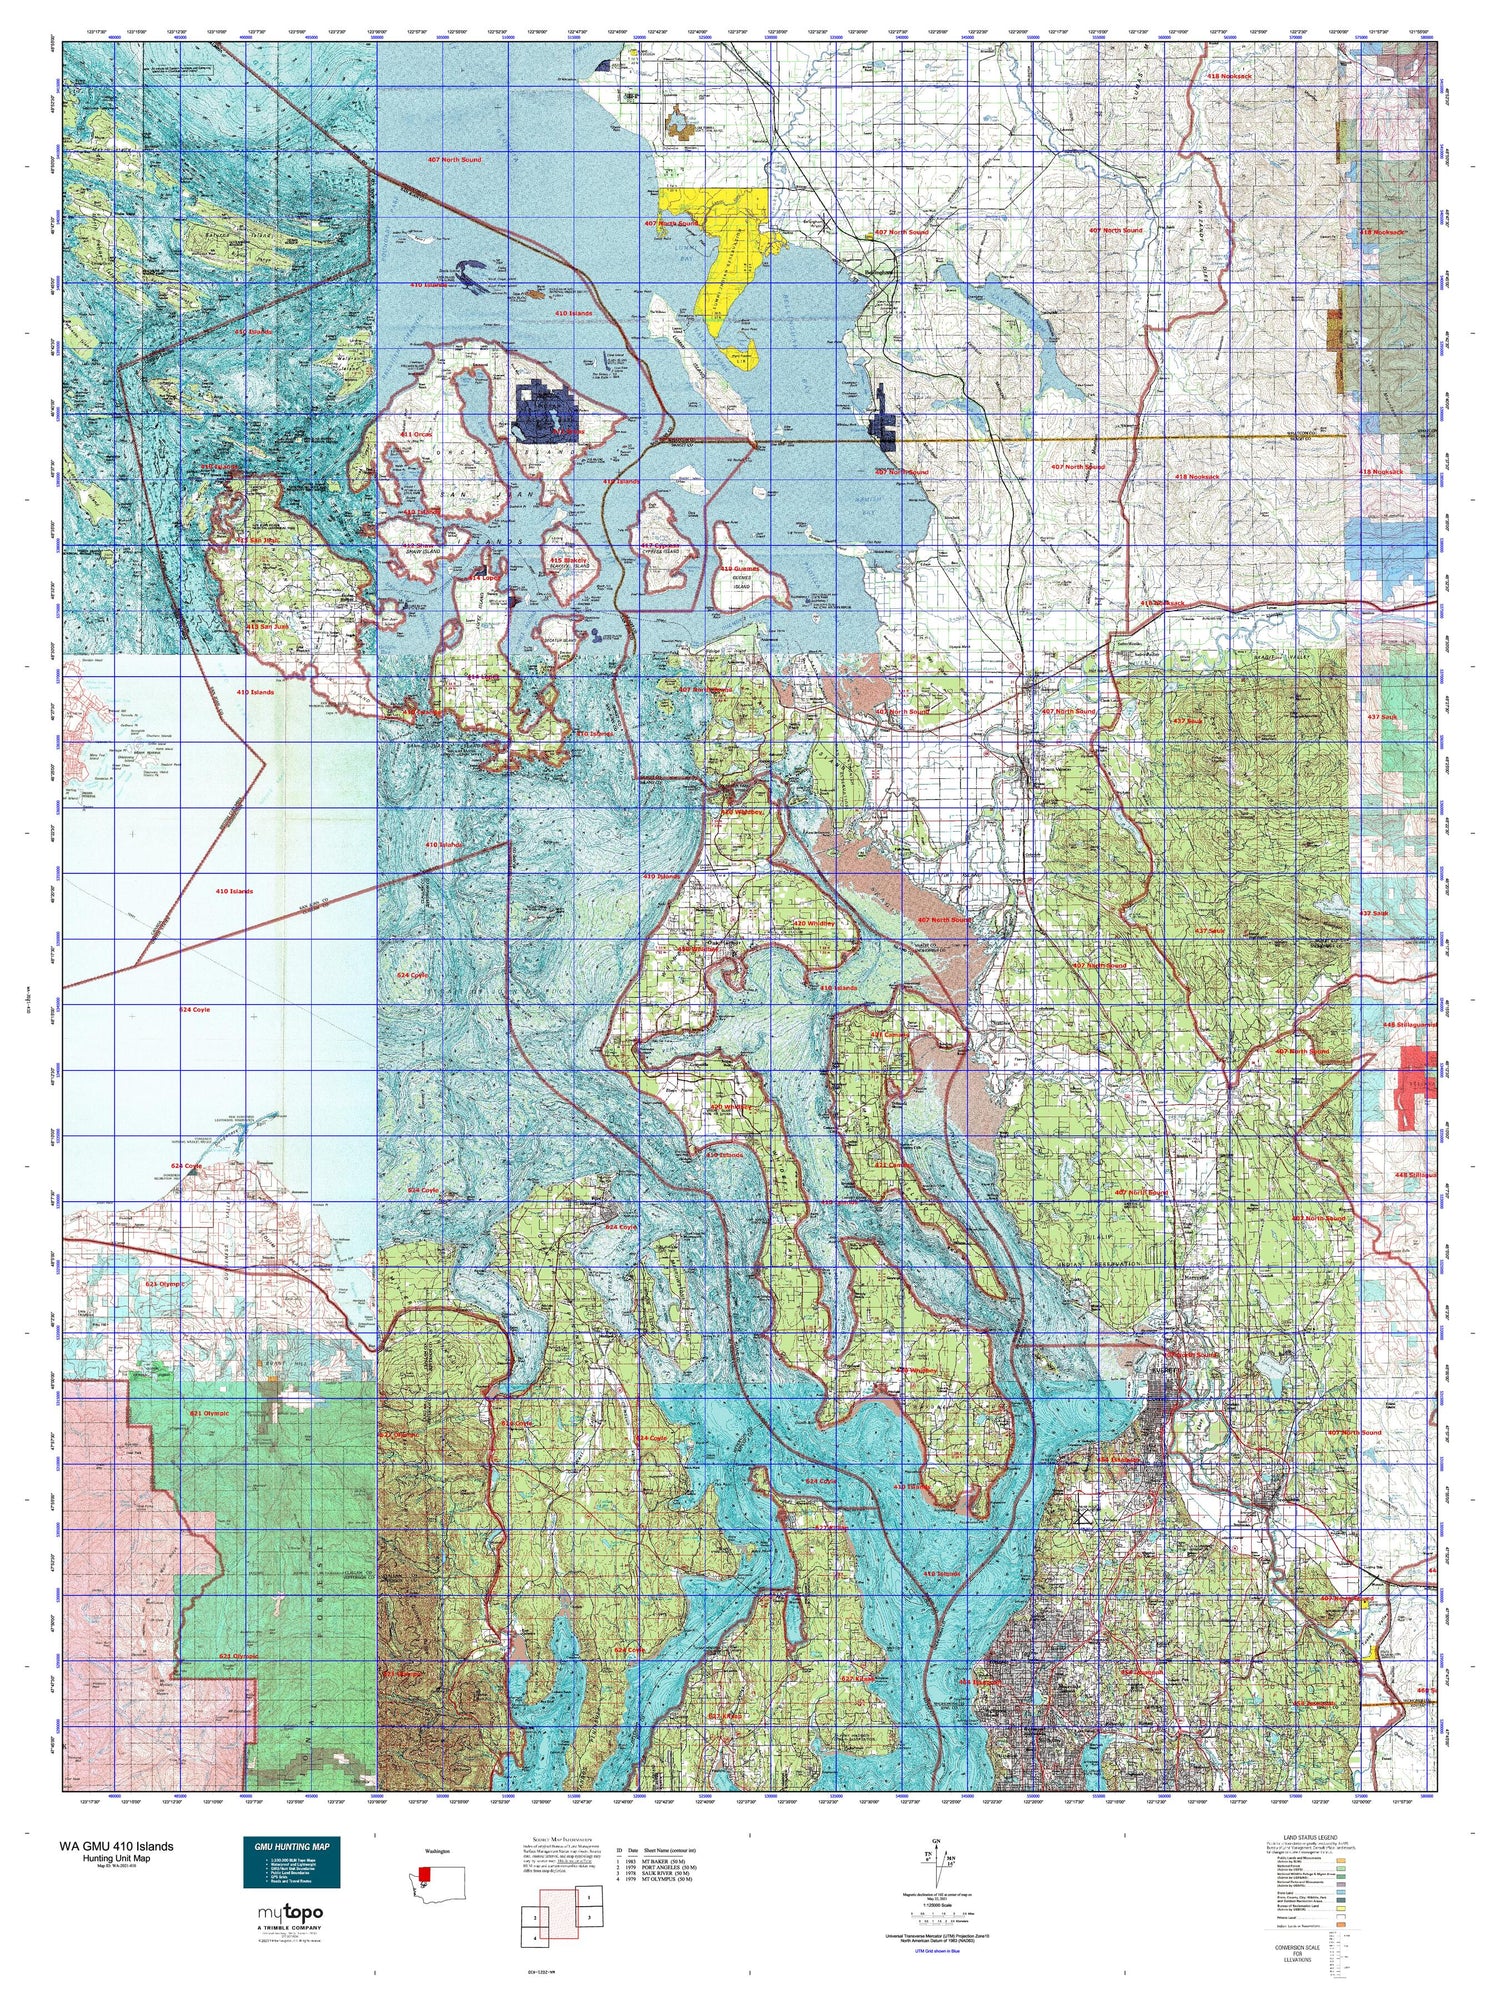 Washington GMU 410 Islands Map Image